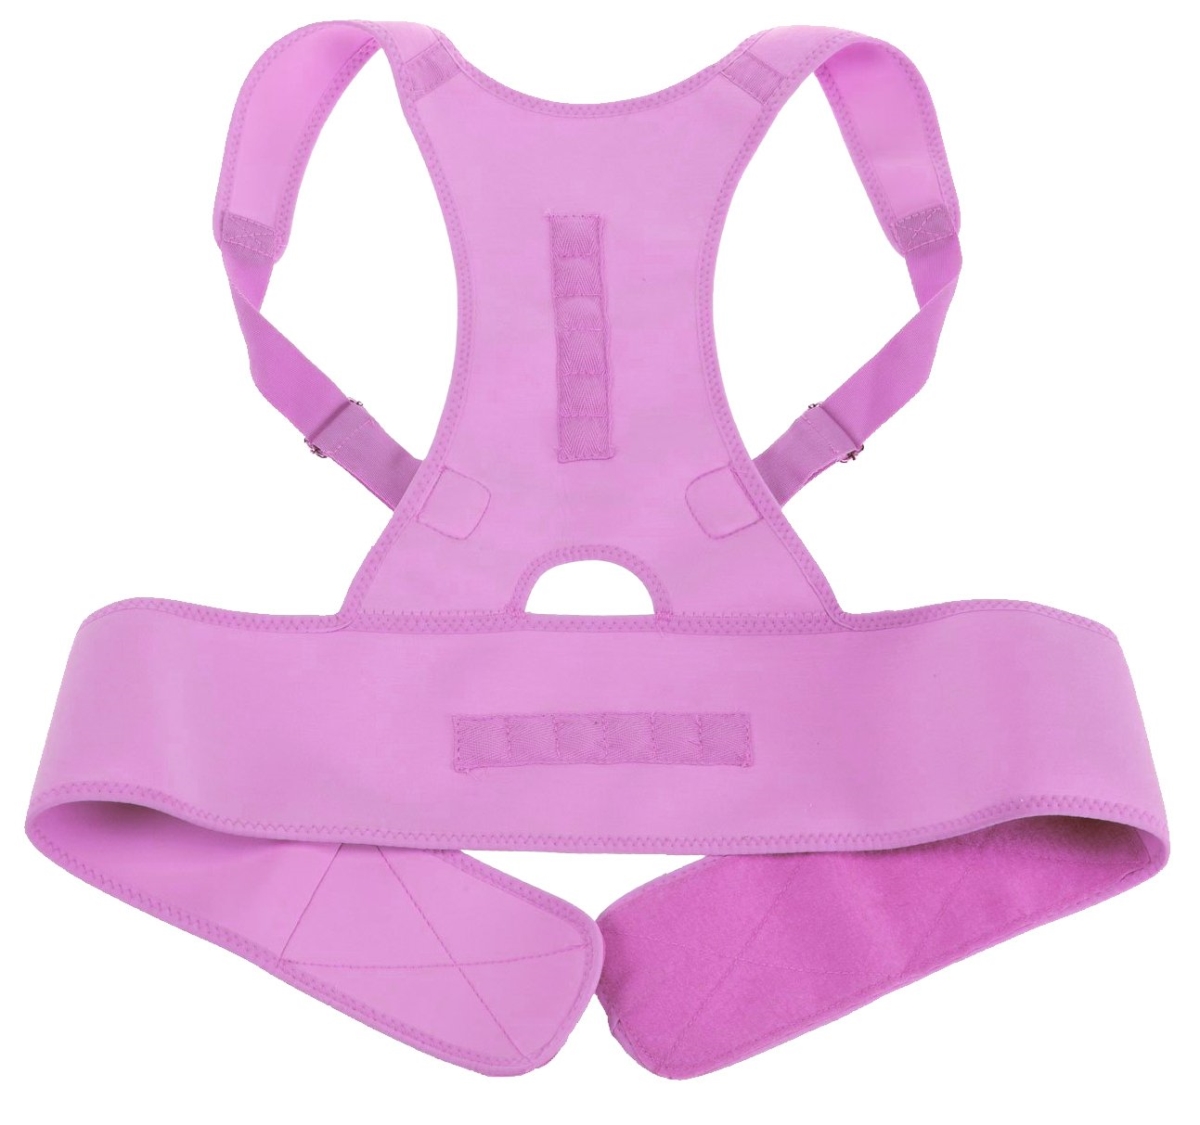 Pxl4036549 Medical Grade Adjustable Magnetic Back Posture Support, Pink - Extra Large